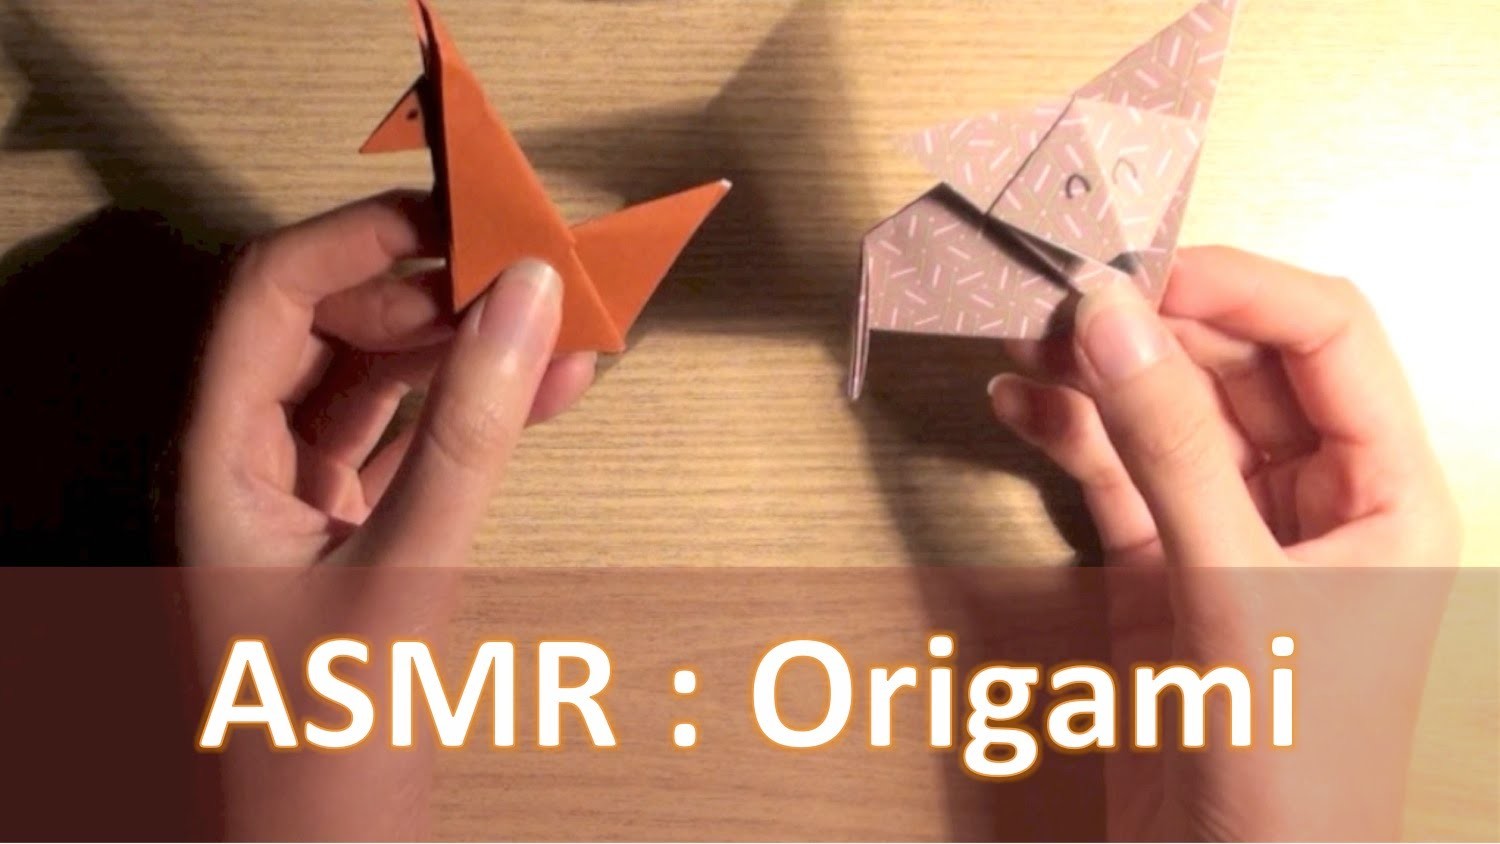 ASMR ITA Origami: spiegazione e 3 esempi (折り紙) [whispering]